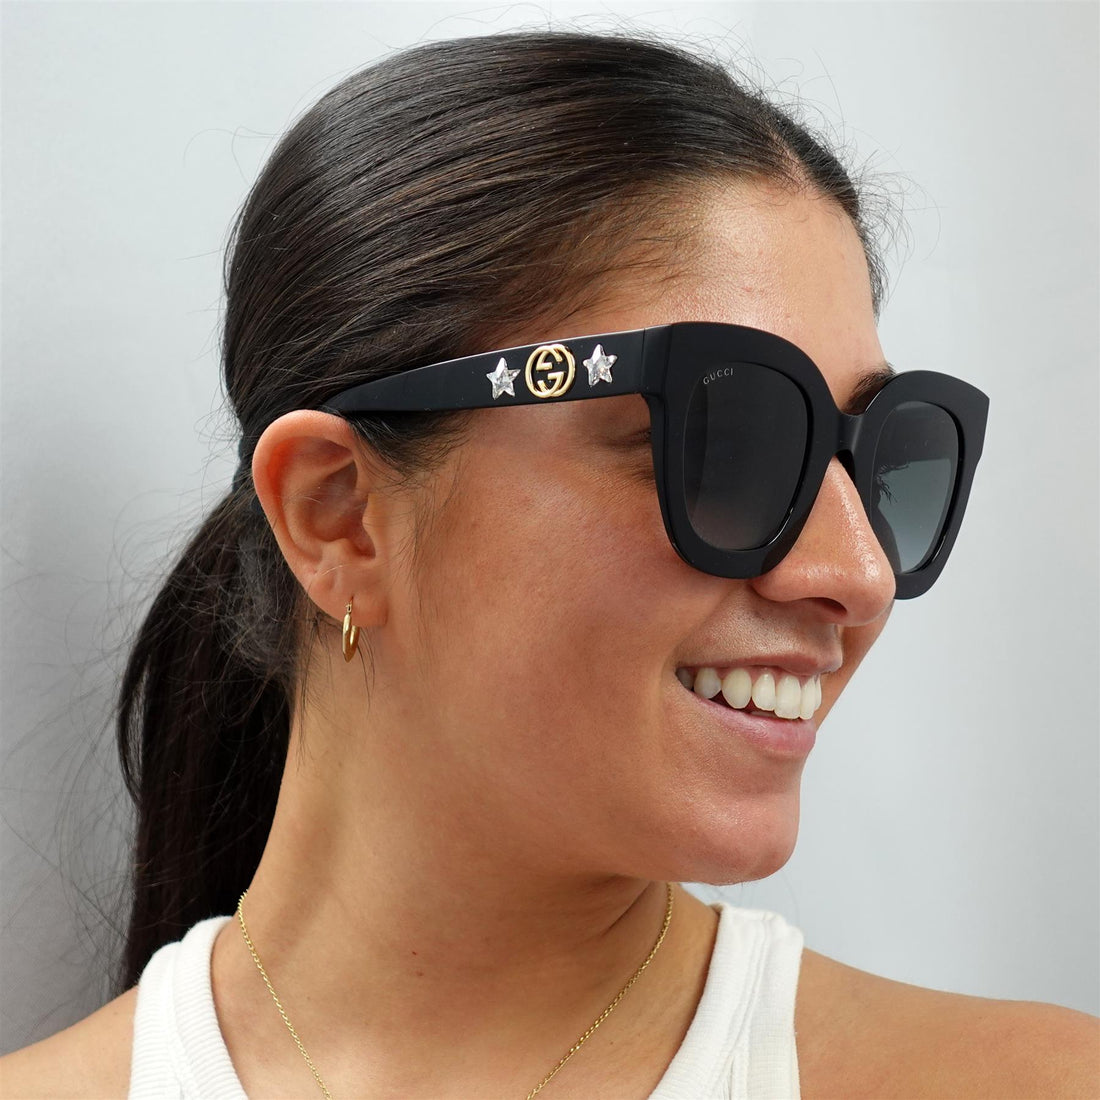 Gucci GG0208S Sunglasses